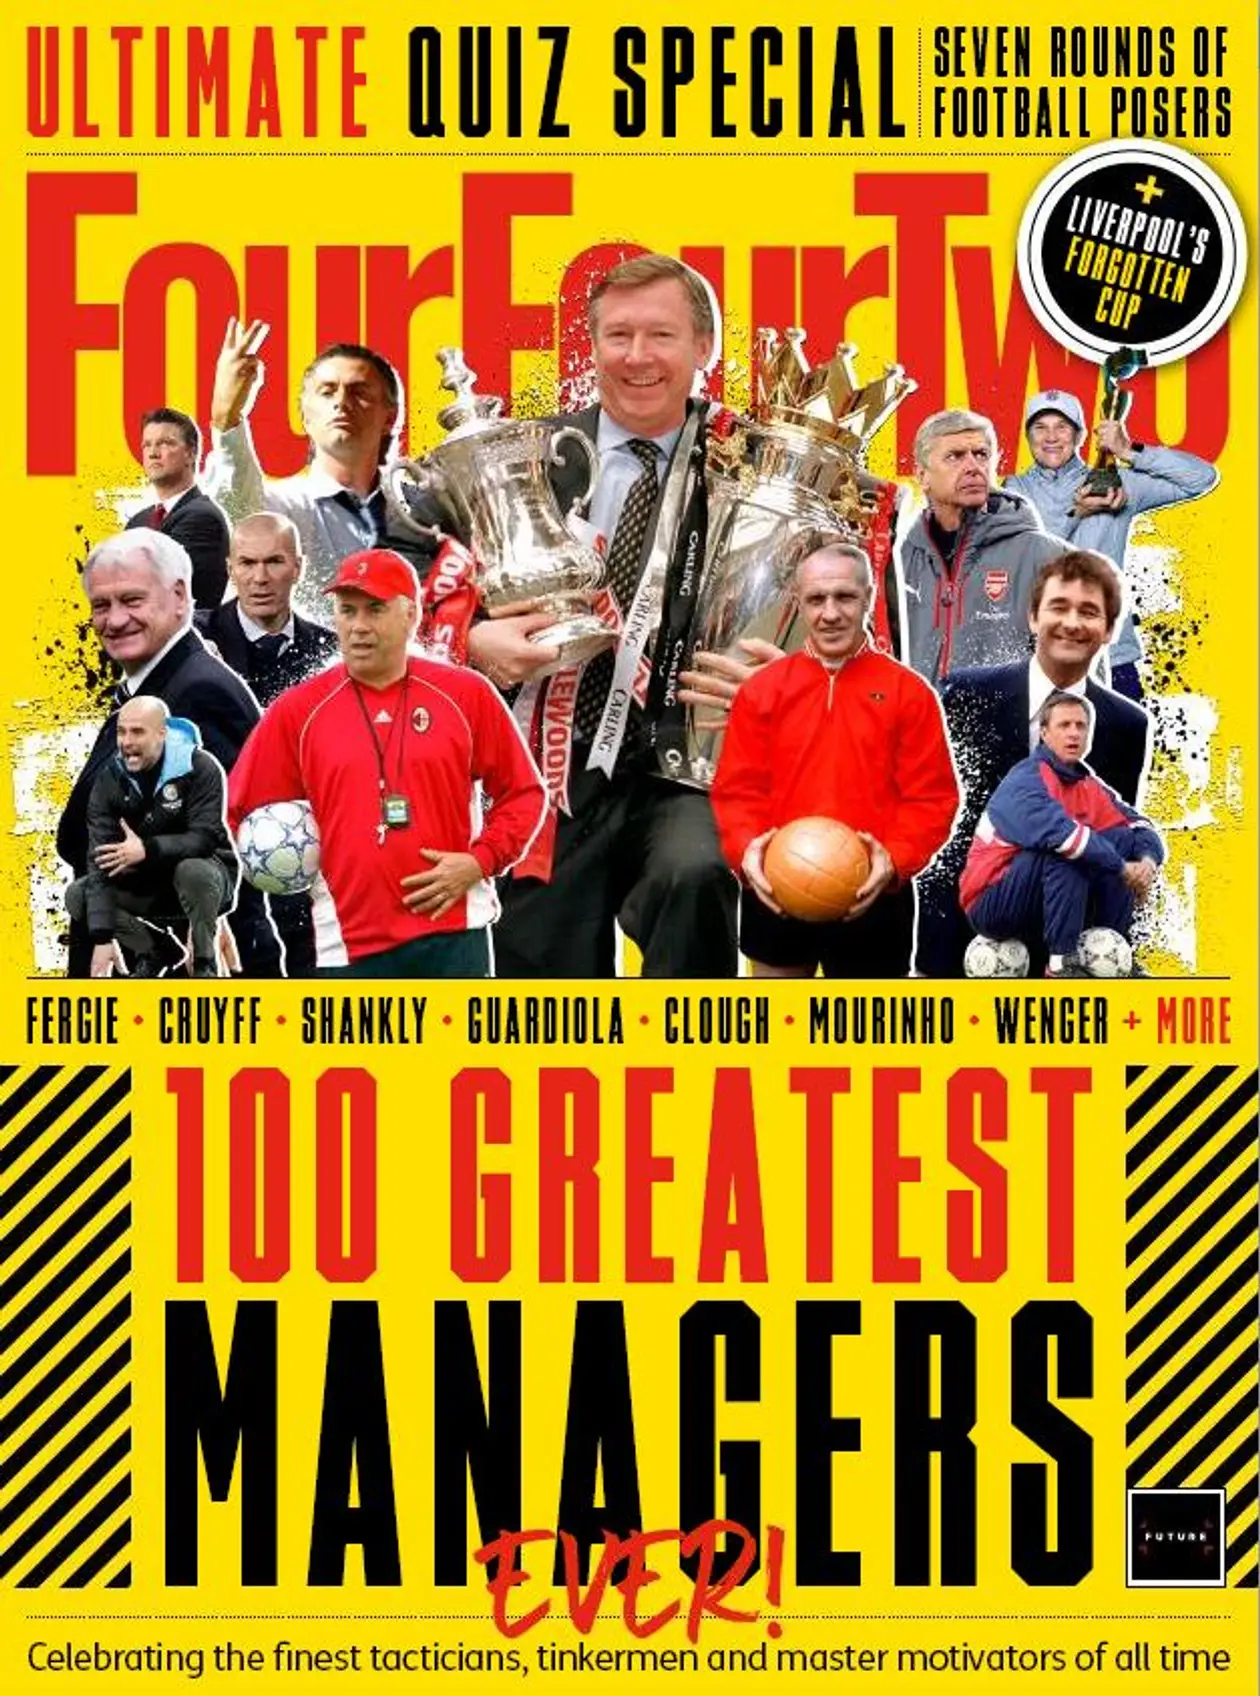 FourFourTwo назвал 100 лучших тренеров за всю историю футбола . Валерий Лобановский в ТОП 10

